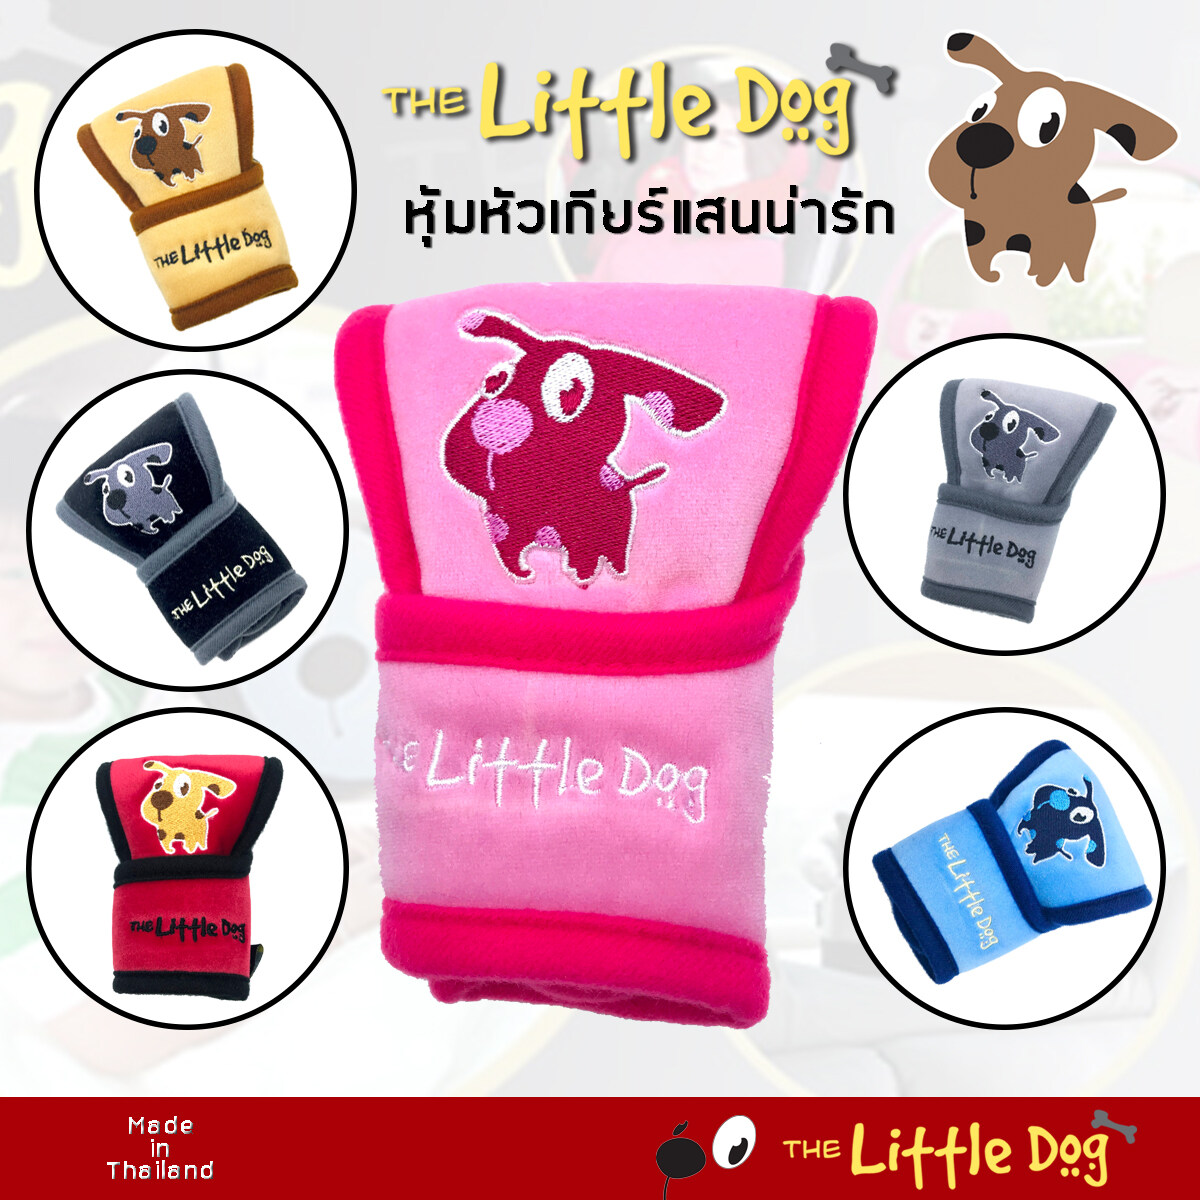 The Little Dog หุ้มหัวเกียร์ เกียร์ออโต้แบบมีปุ่มข้าง  - ผ้า Poly Velour คุณภาพ ปักลายการ์ตูน - Made in Thailand